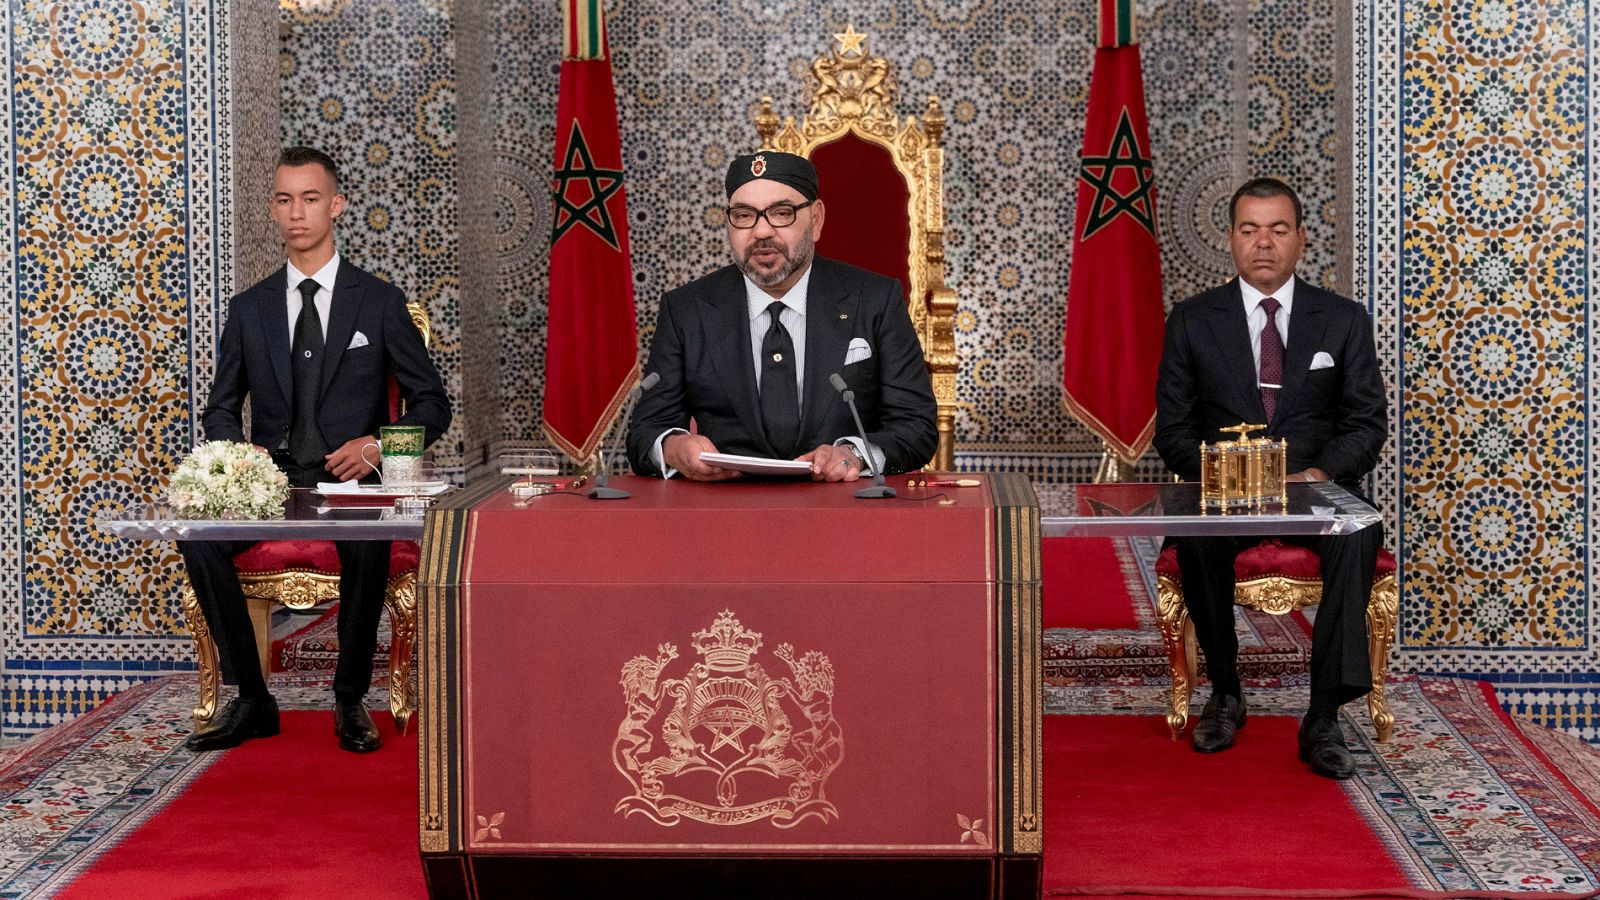 Marruecos: Mohamed VI celebra el 20 aniversario de su llegada al trono - RTVE.es